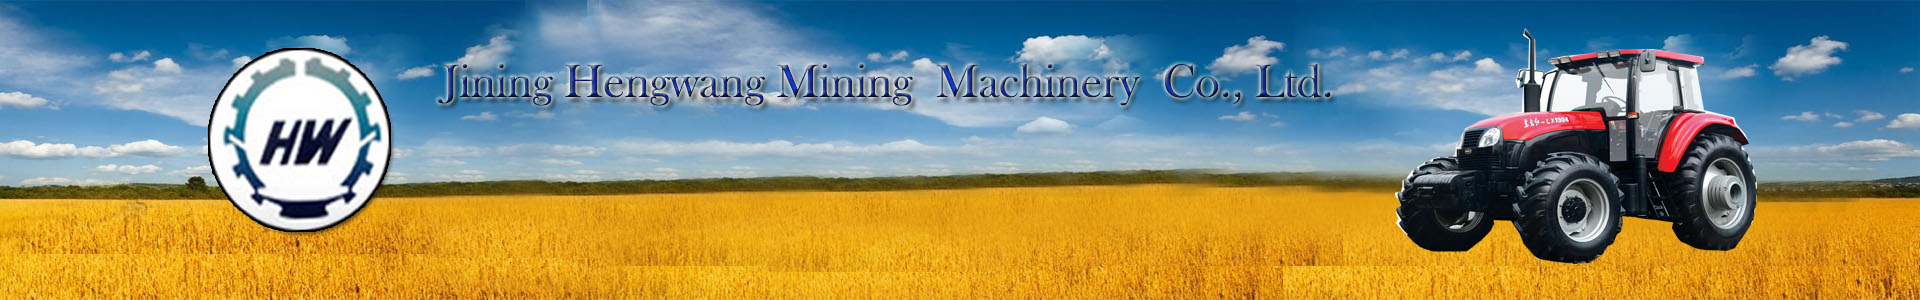 Jining hengwang Mining Machinery Co., Ltd.